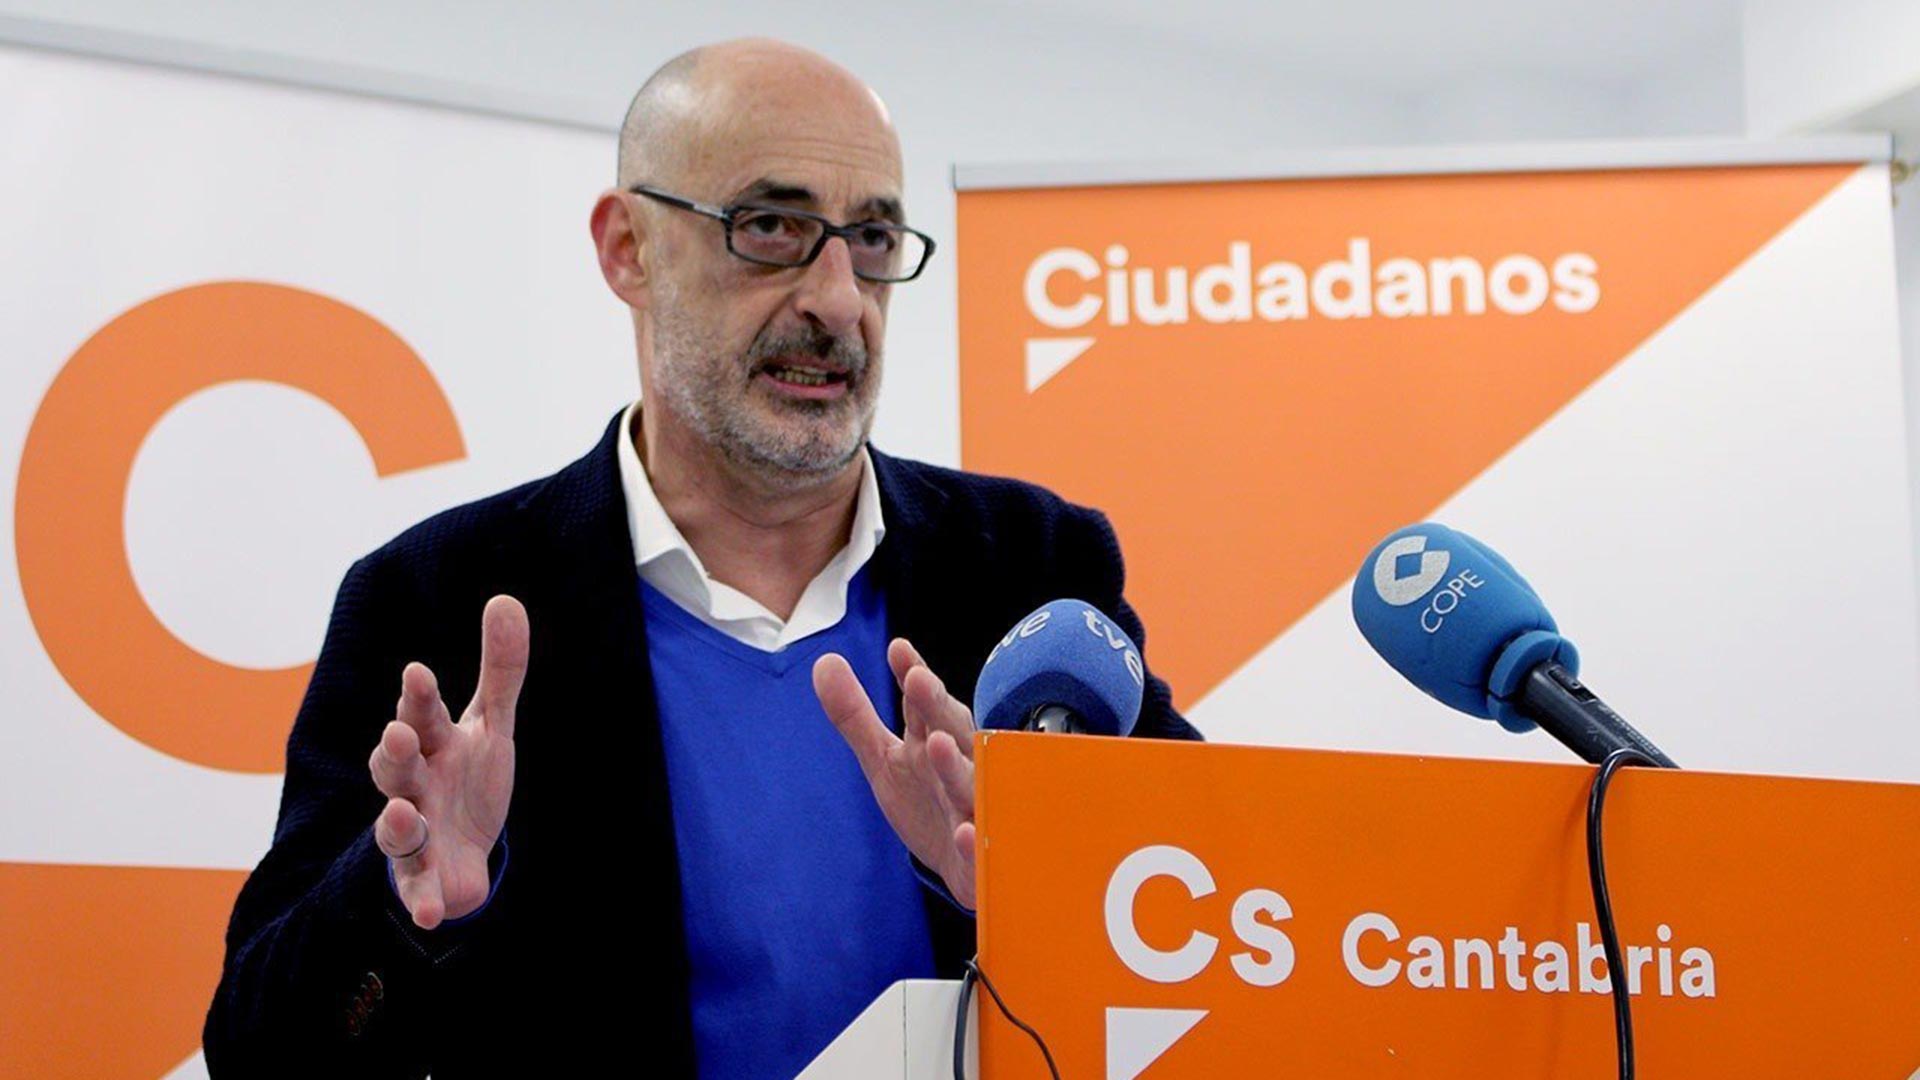 El portavoz de Cs de Cantabria, Félix Álvarez 'Felisuco', dimite por desavenencias con la dirección